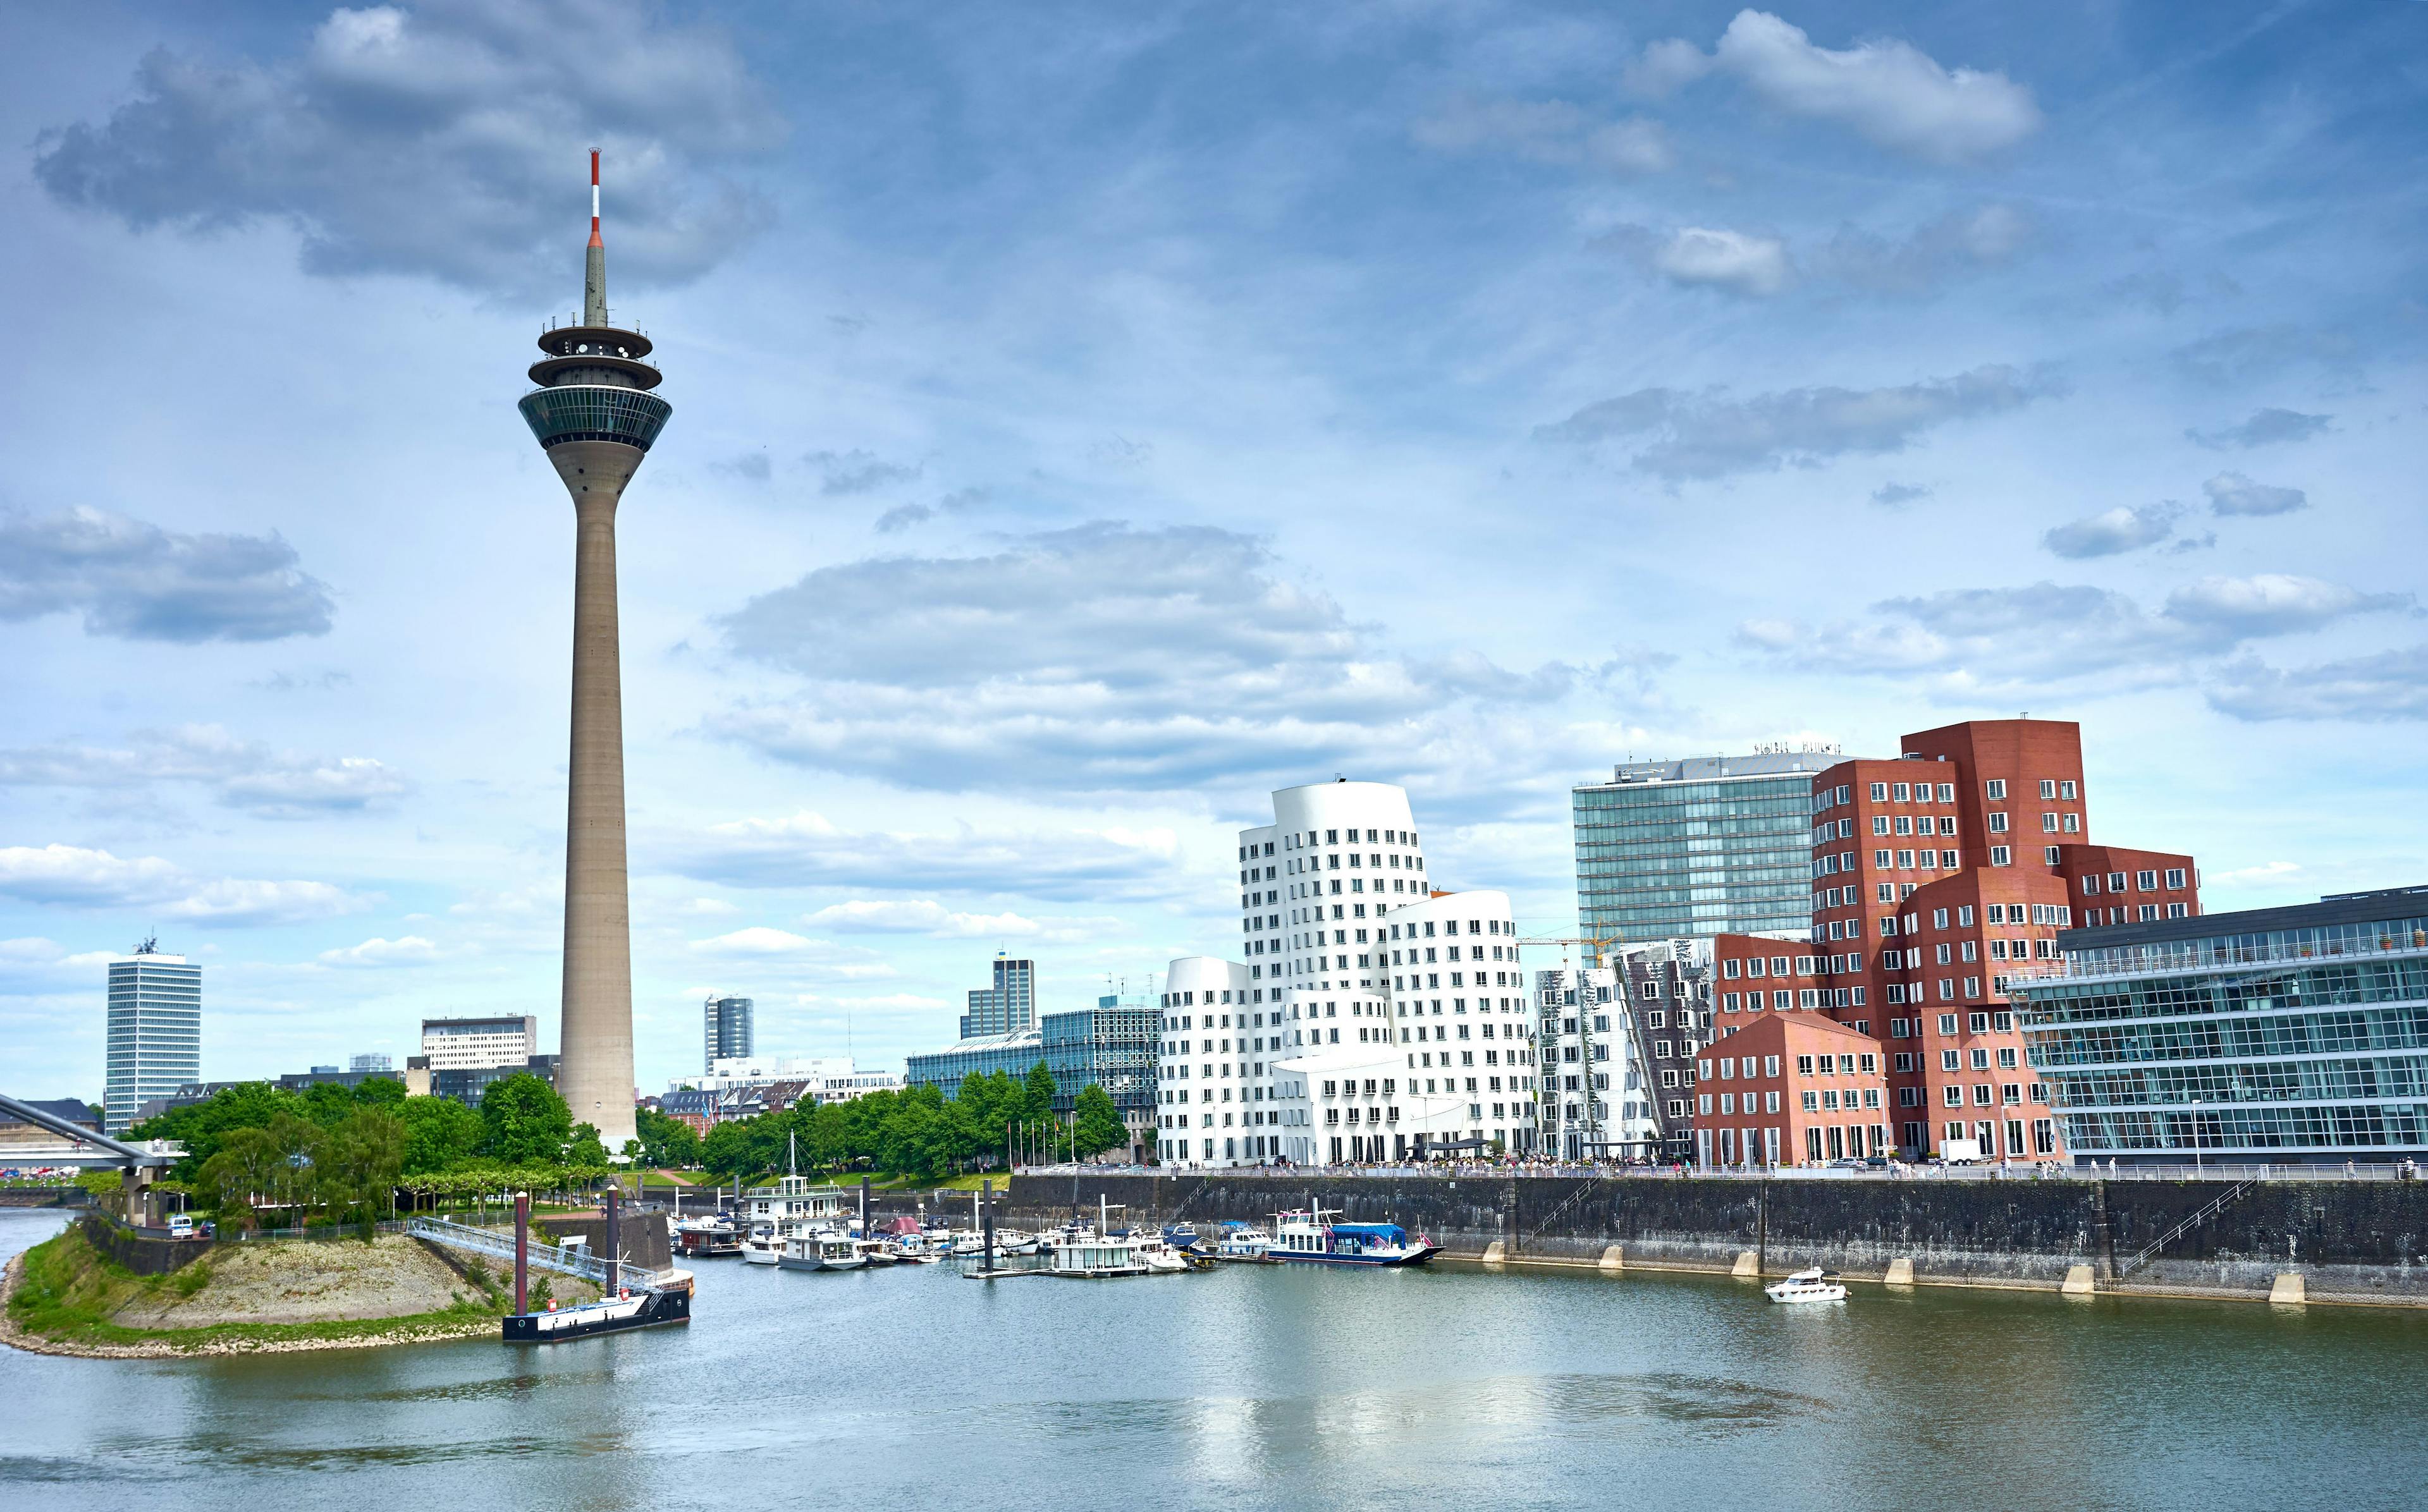 The city of Düsseldorf, Germany